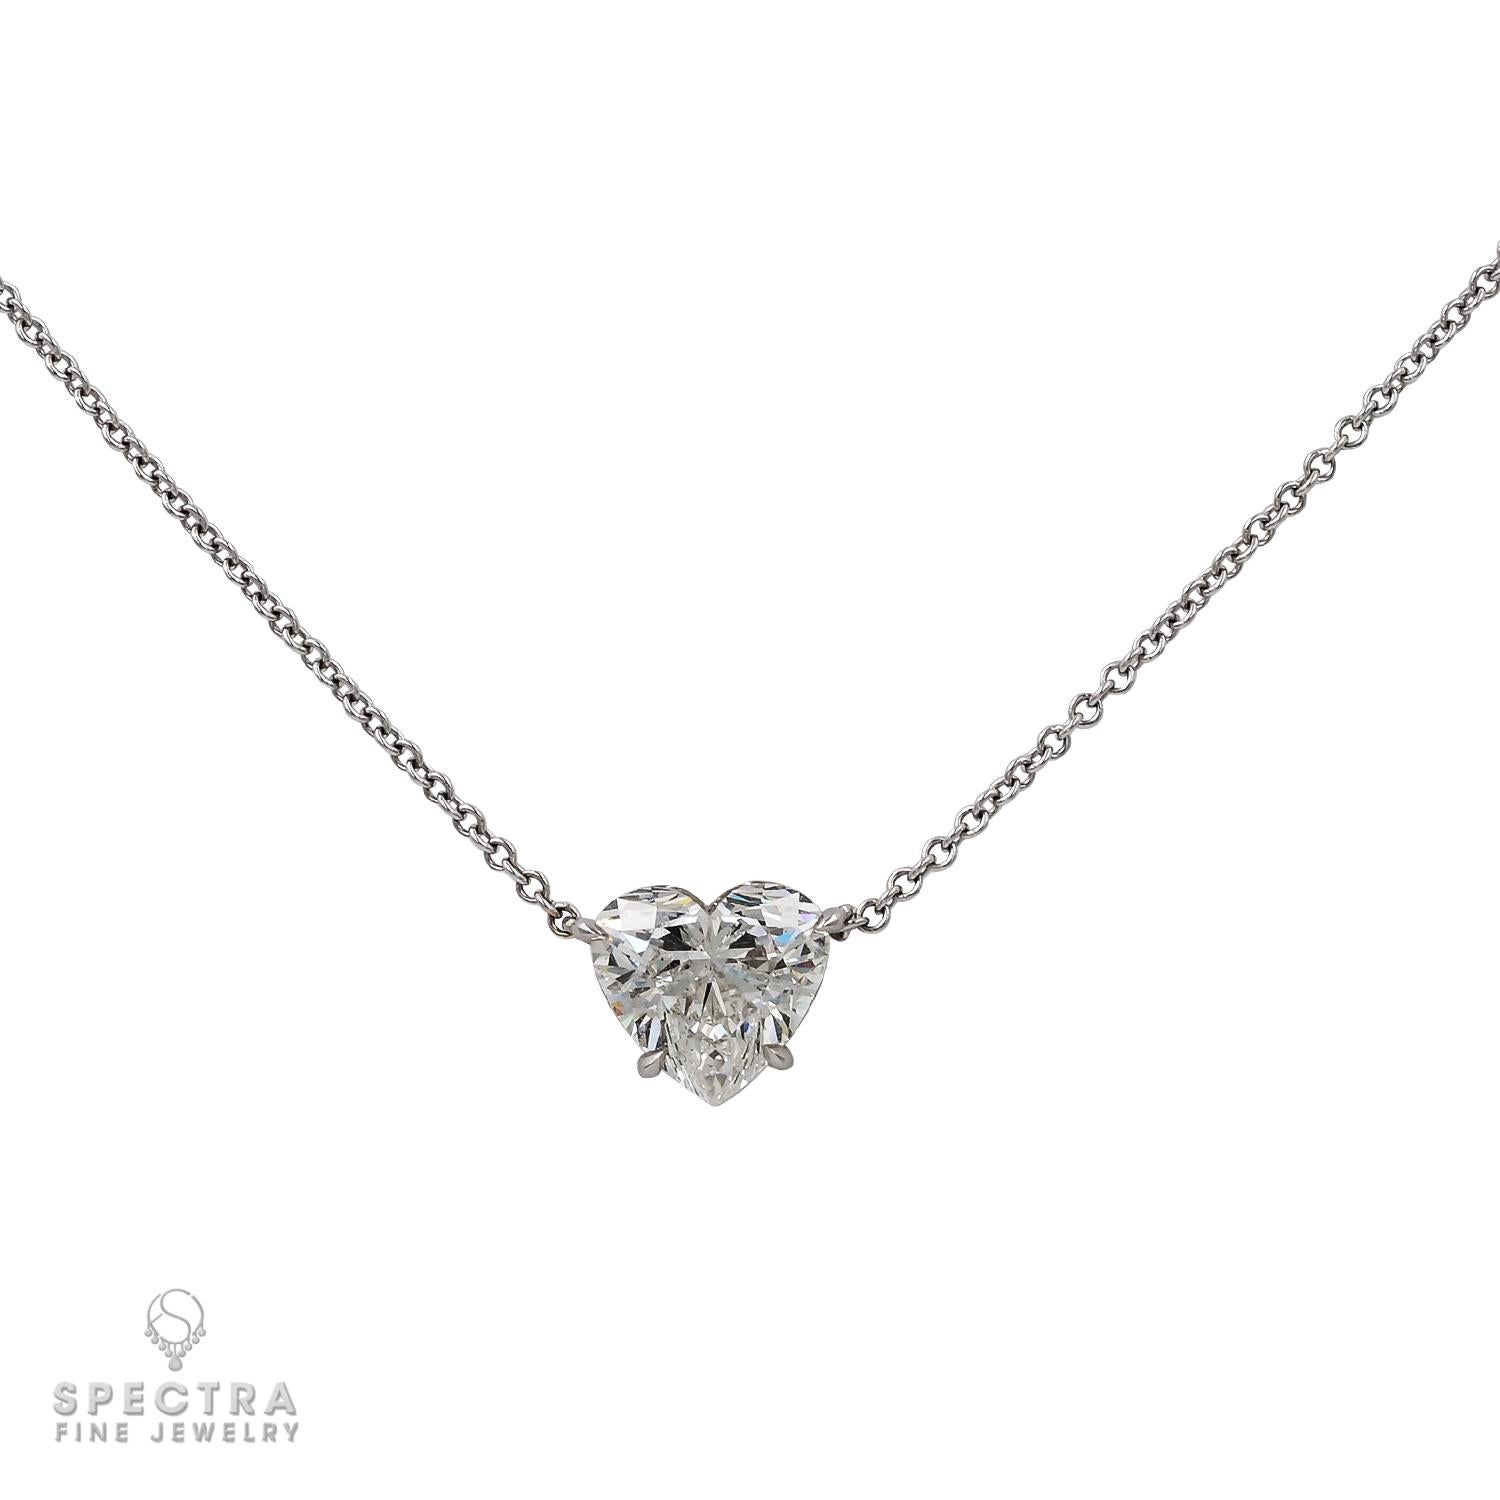 Spectra Fine Jewelry präsentiert die 2,11ct HS I SI2 Diamant-Halskette, ein atemberaubendes Meisterwerk, das den Inbegriff von Luxus und Schönheit verkörpert. Diese elegante Halskette präsentiert einen 2,11-karätigen Diamanten in Herzform, der vom